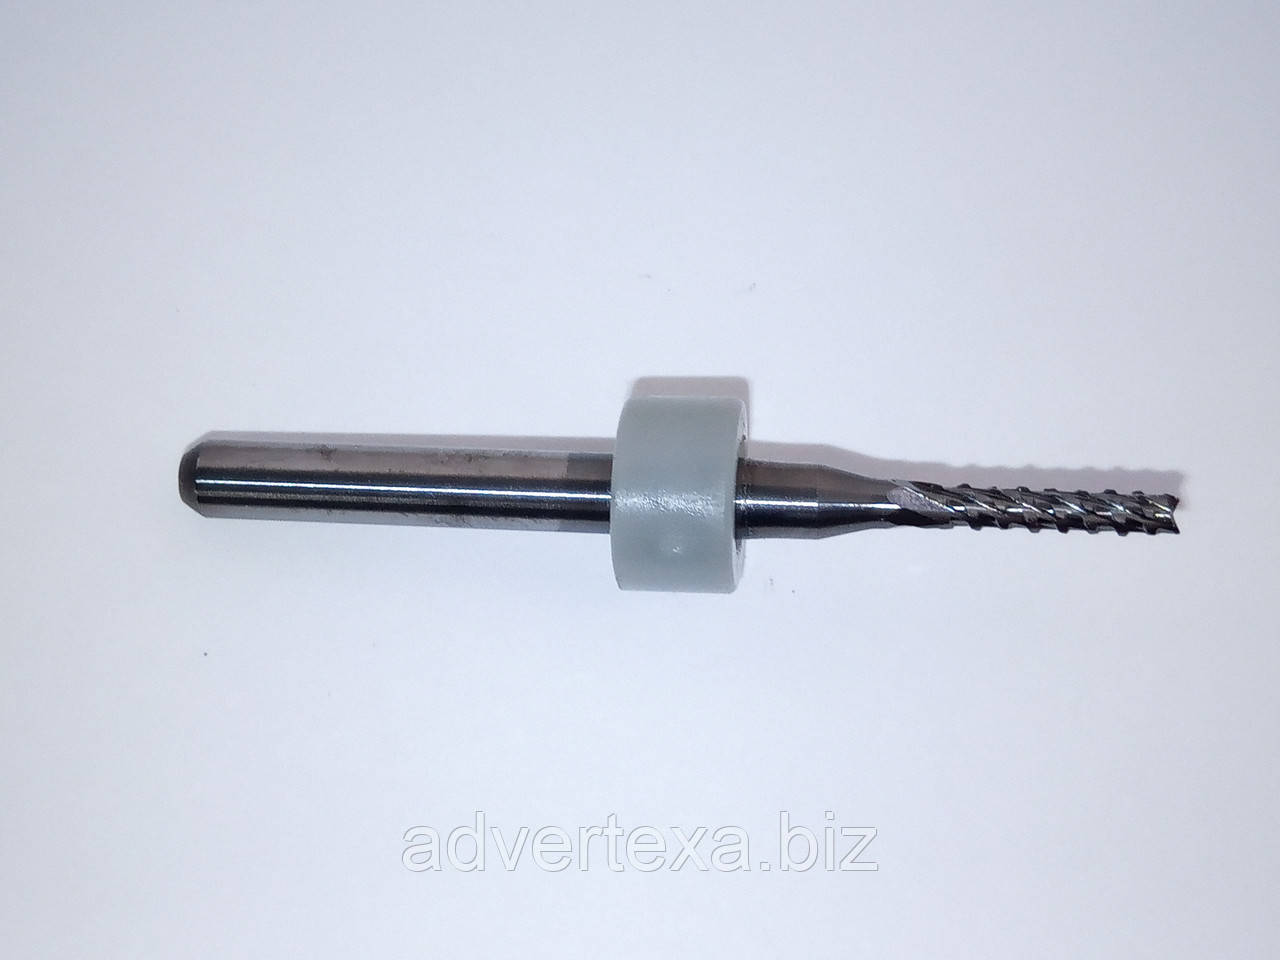 Фреза 1.8 мм 3.175 мм із вольфрамової сталі із загальною довжиною 36 мм для гравіювання на ЧПК верстатах CNC